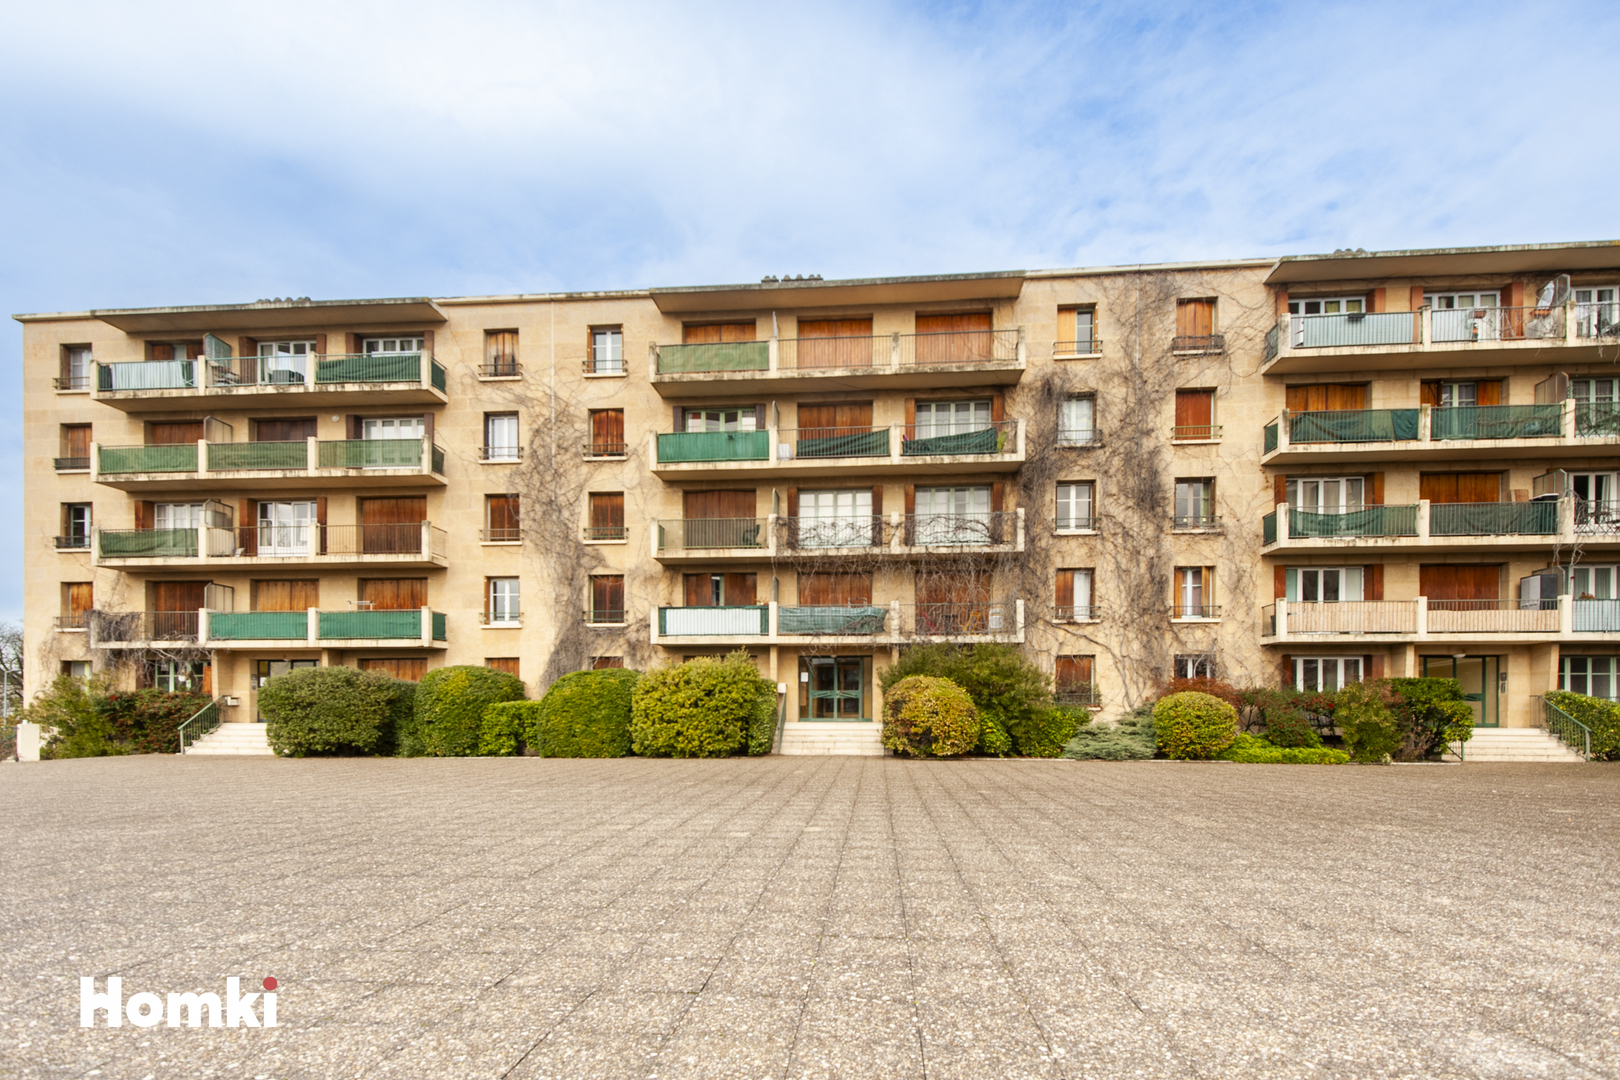 Homki - Vente Appartement  de 44.0 m² à Aix-en-Provence 13090